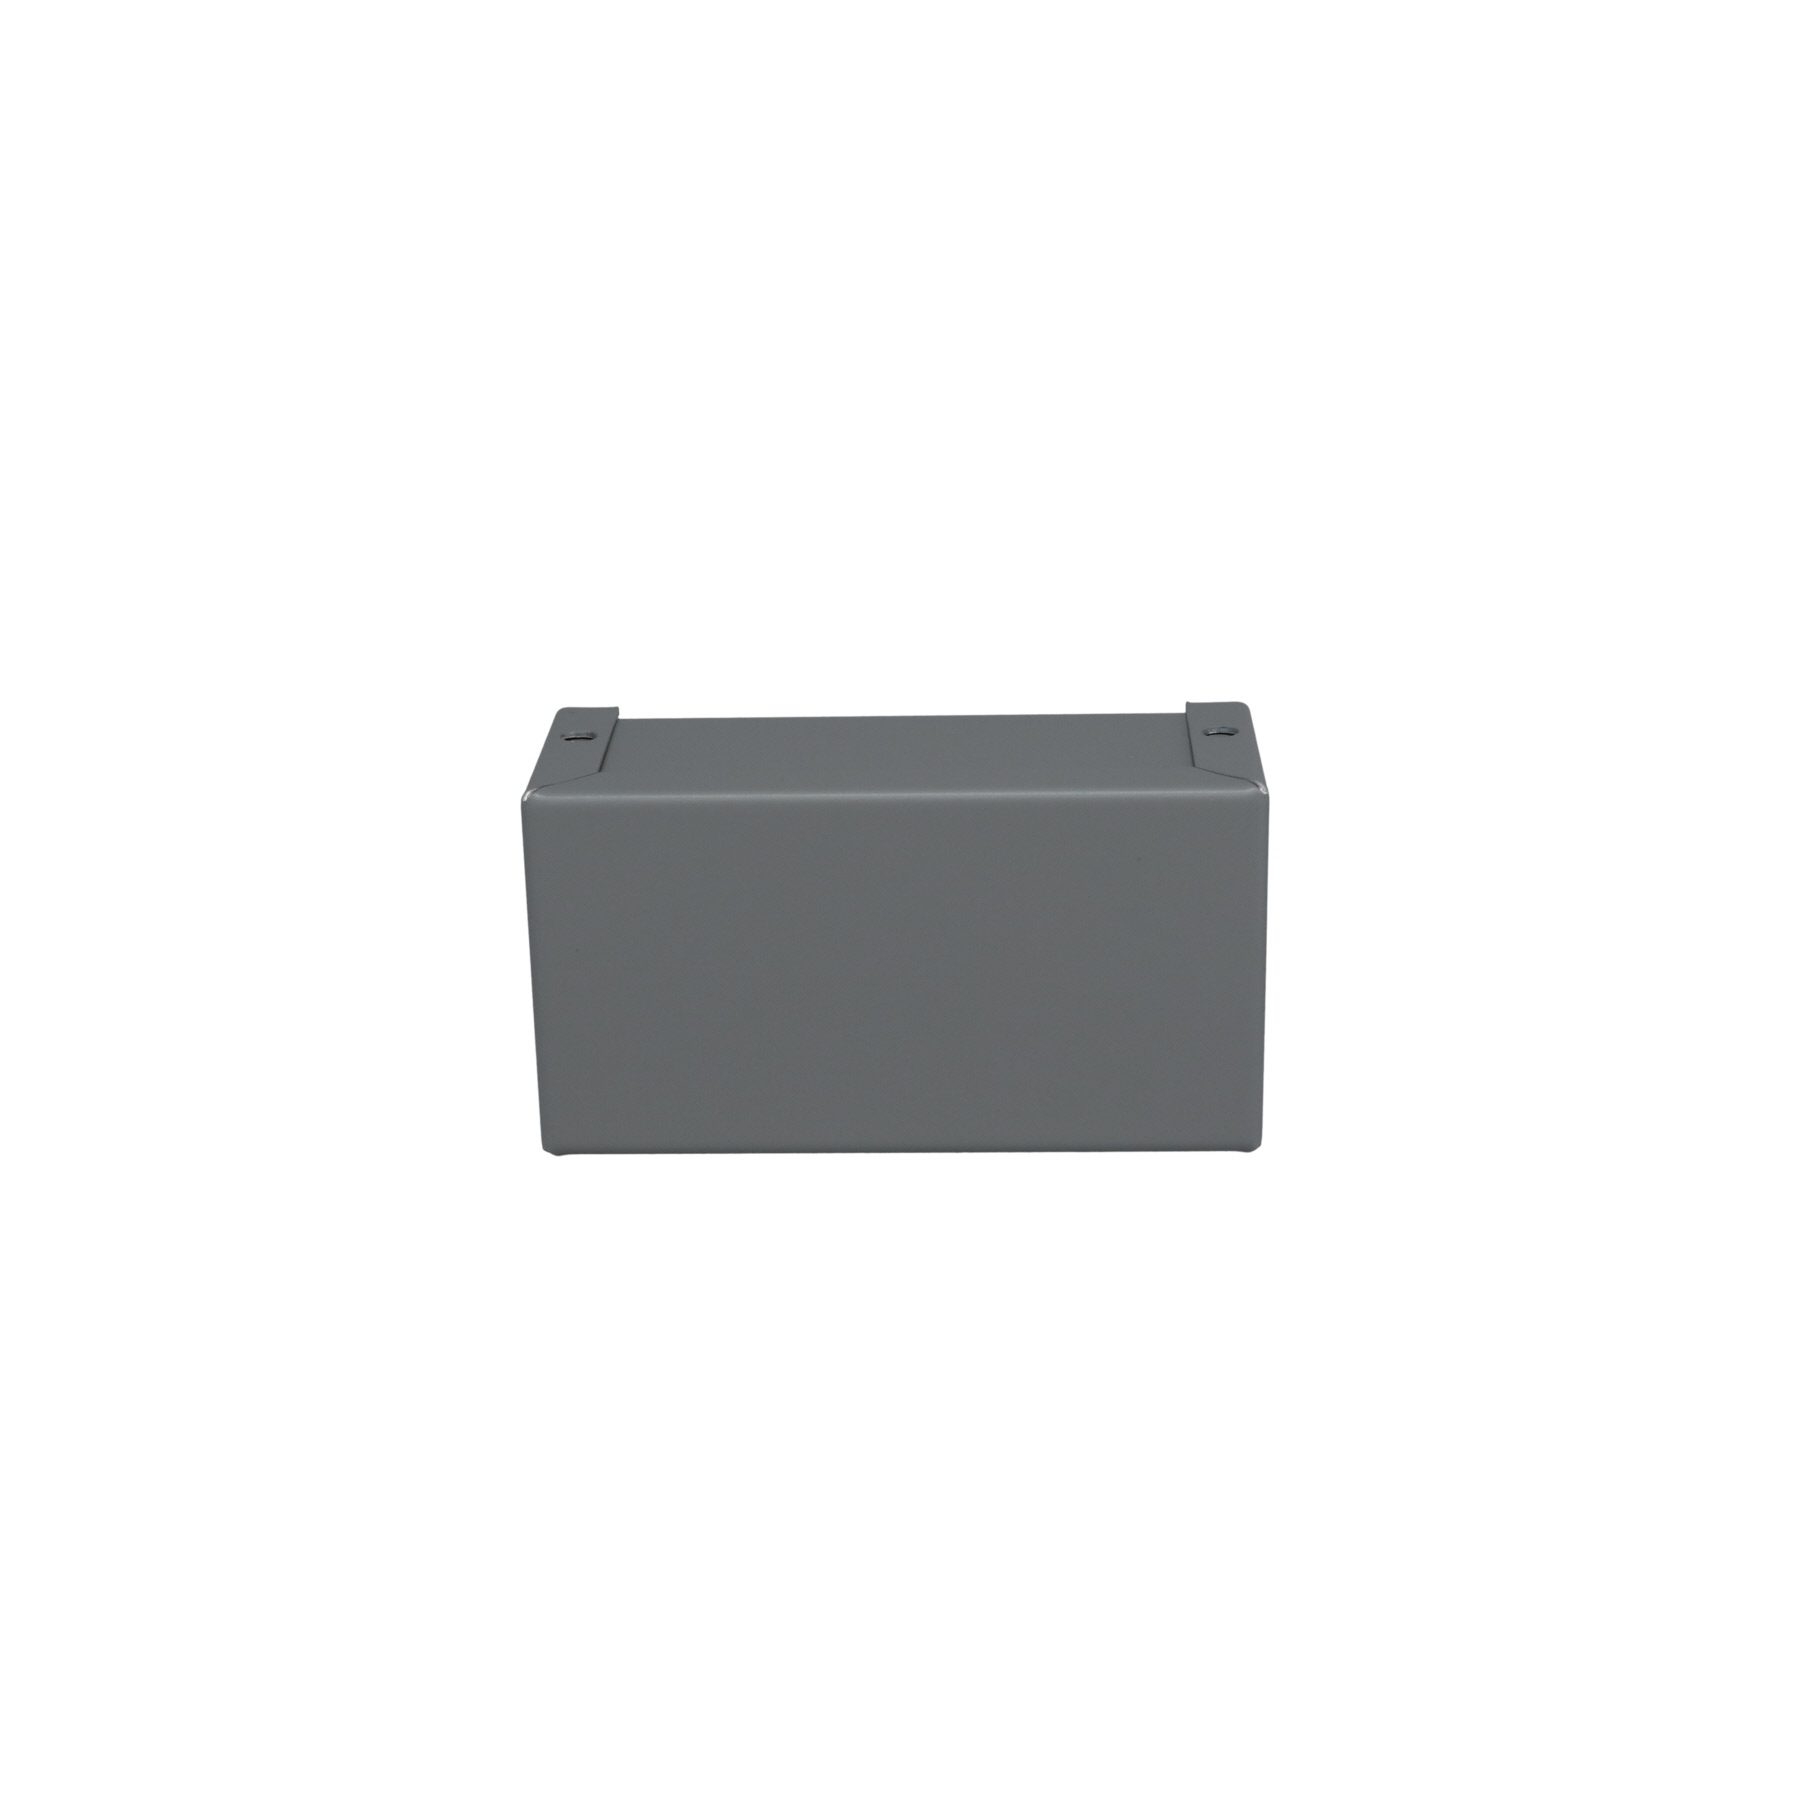 Minibox Small Metal Box Gray CU-2102-B